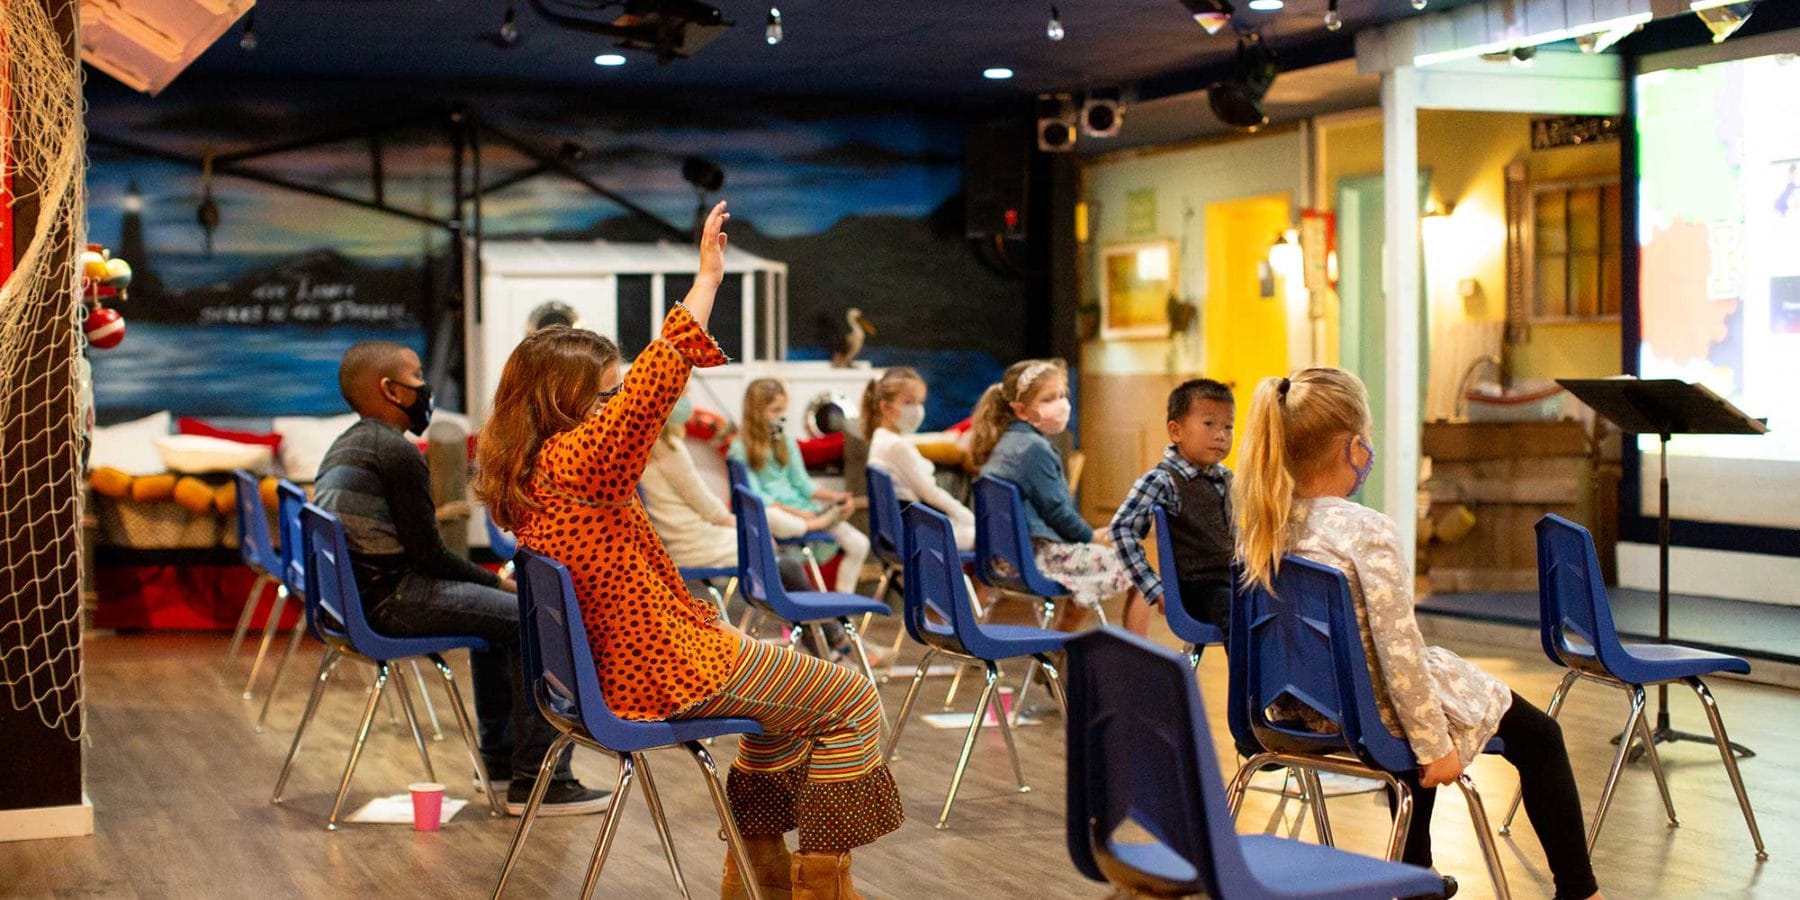 Children listen in a church classroom